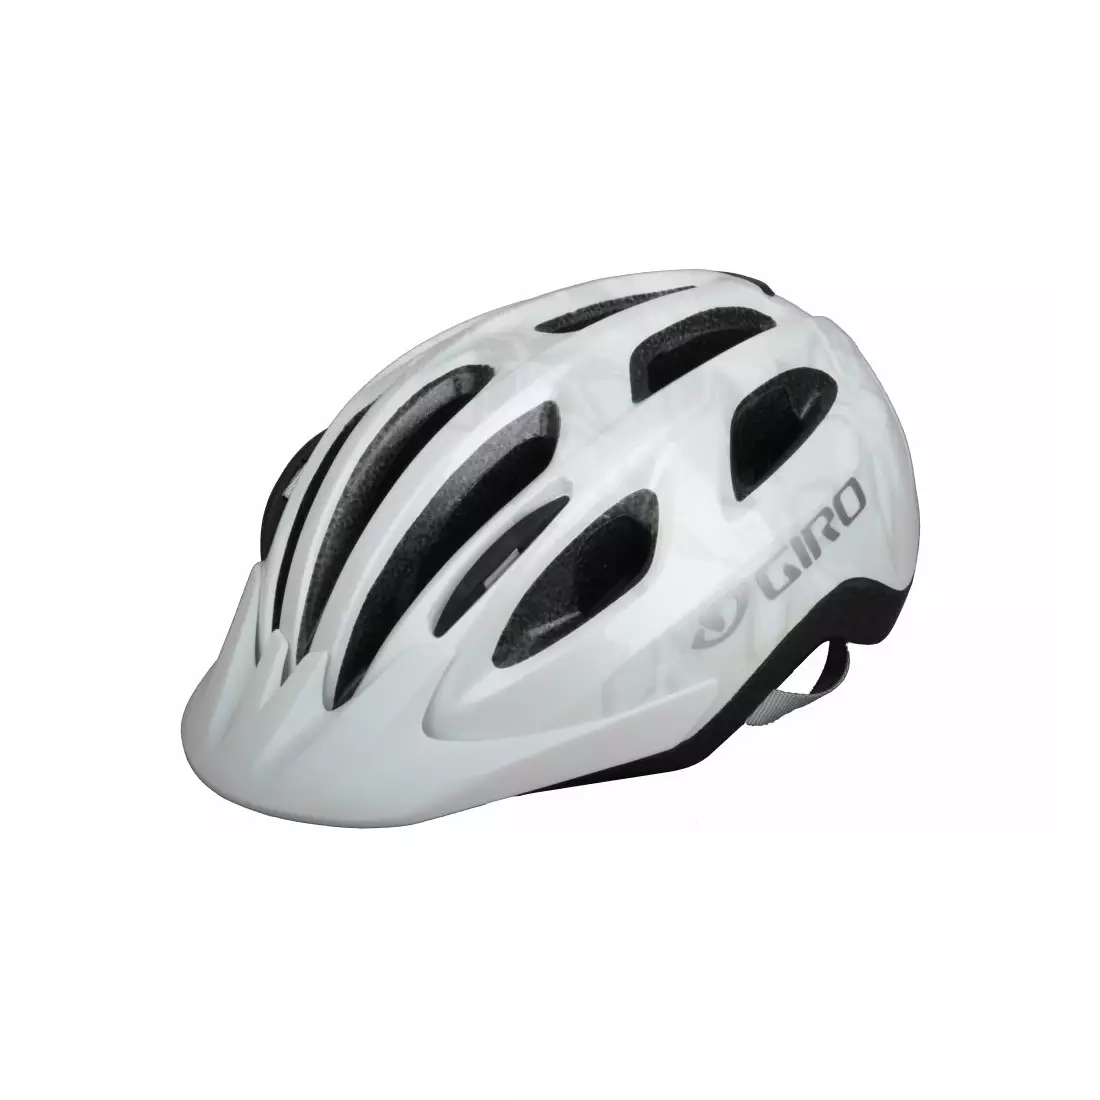 GIRO VENUS II women's bicycle helmet, white